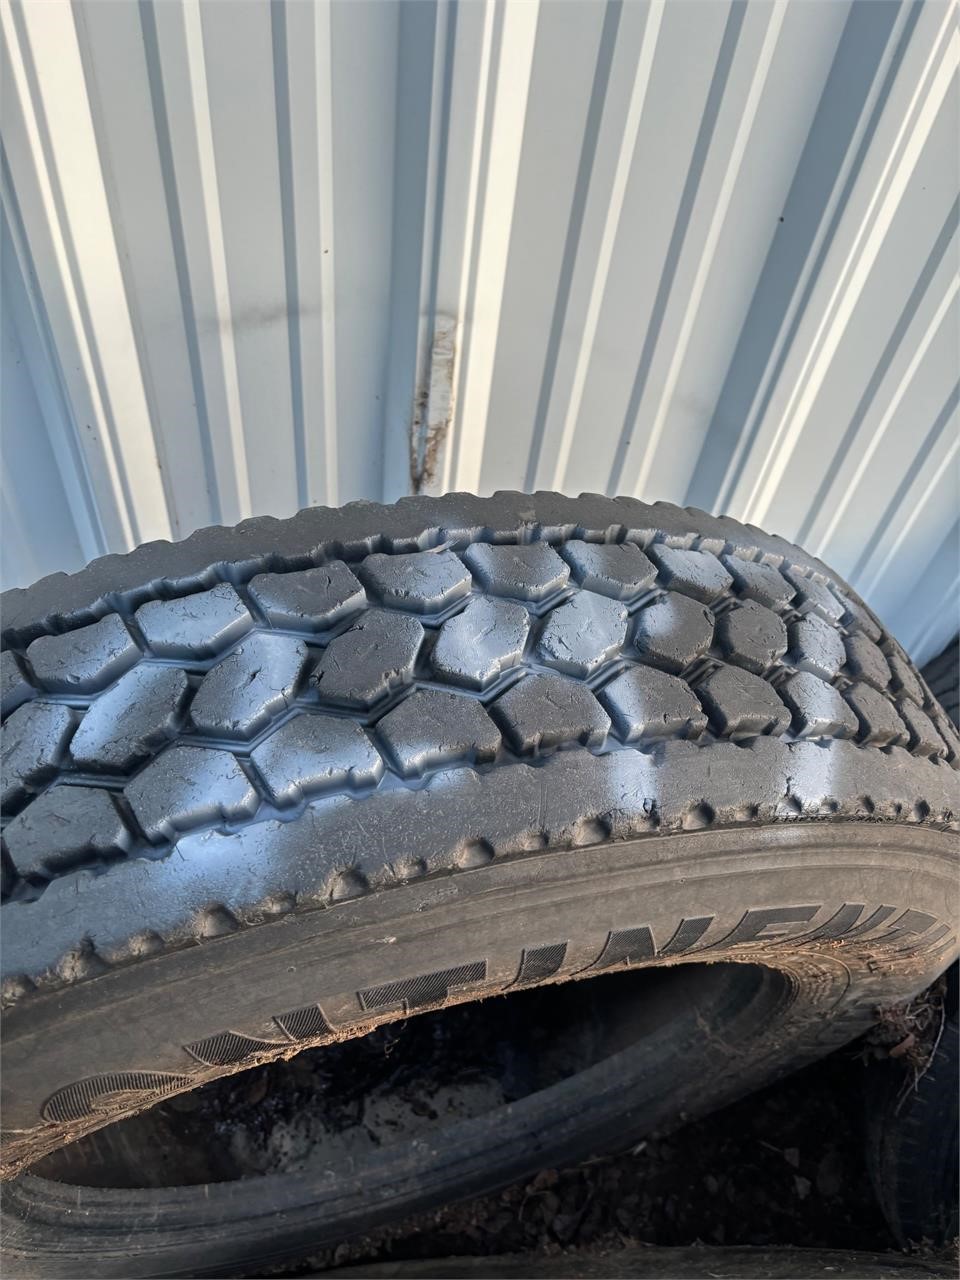 Used semi tire good tread